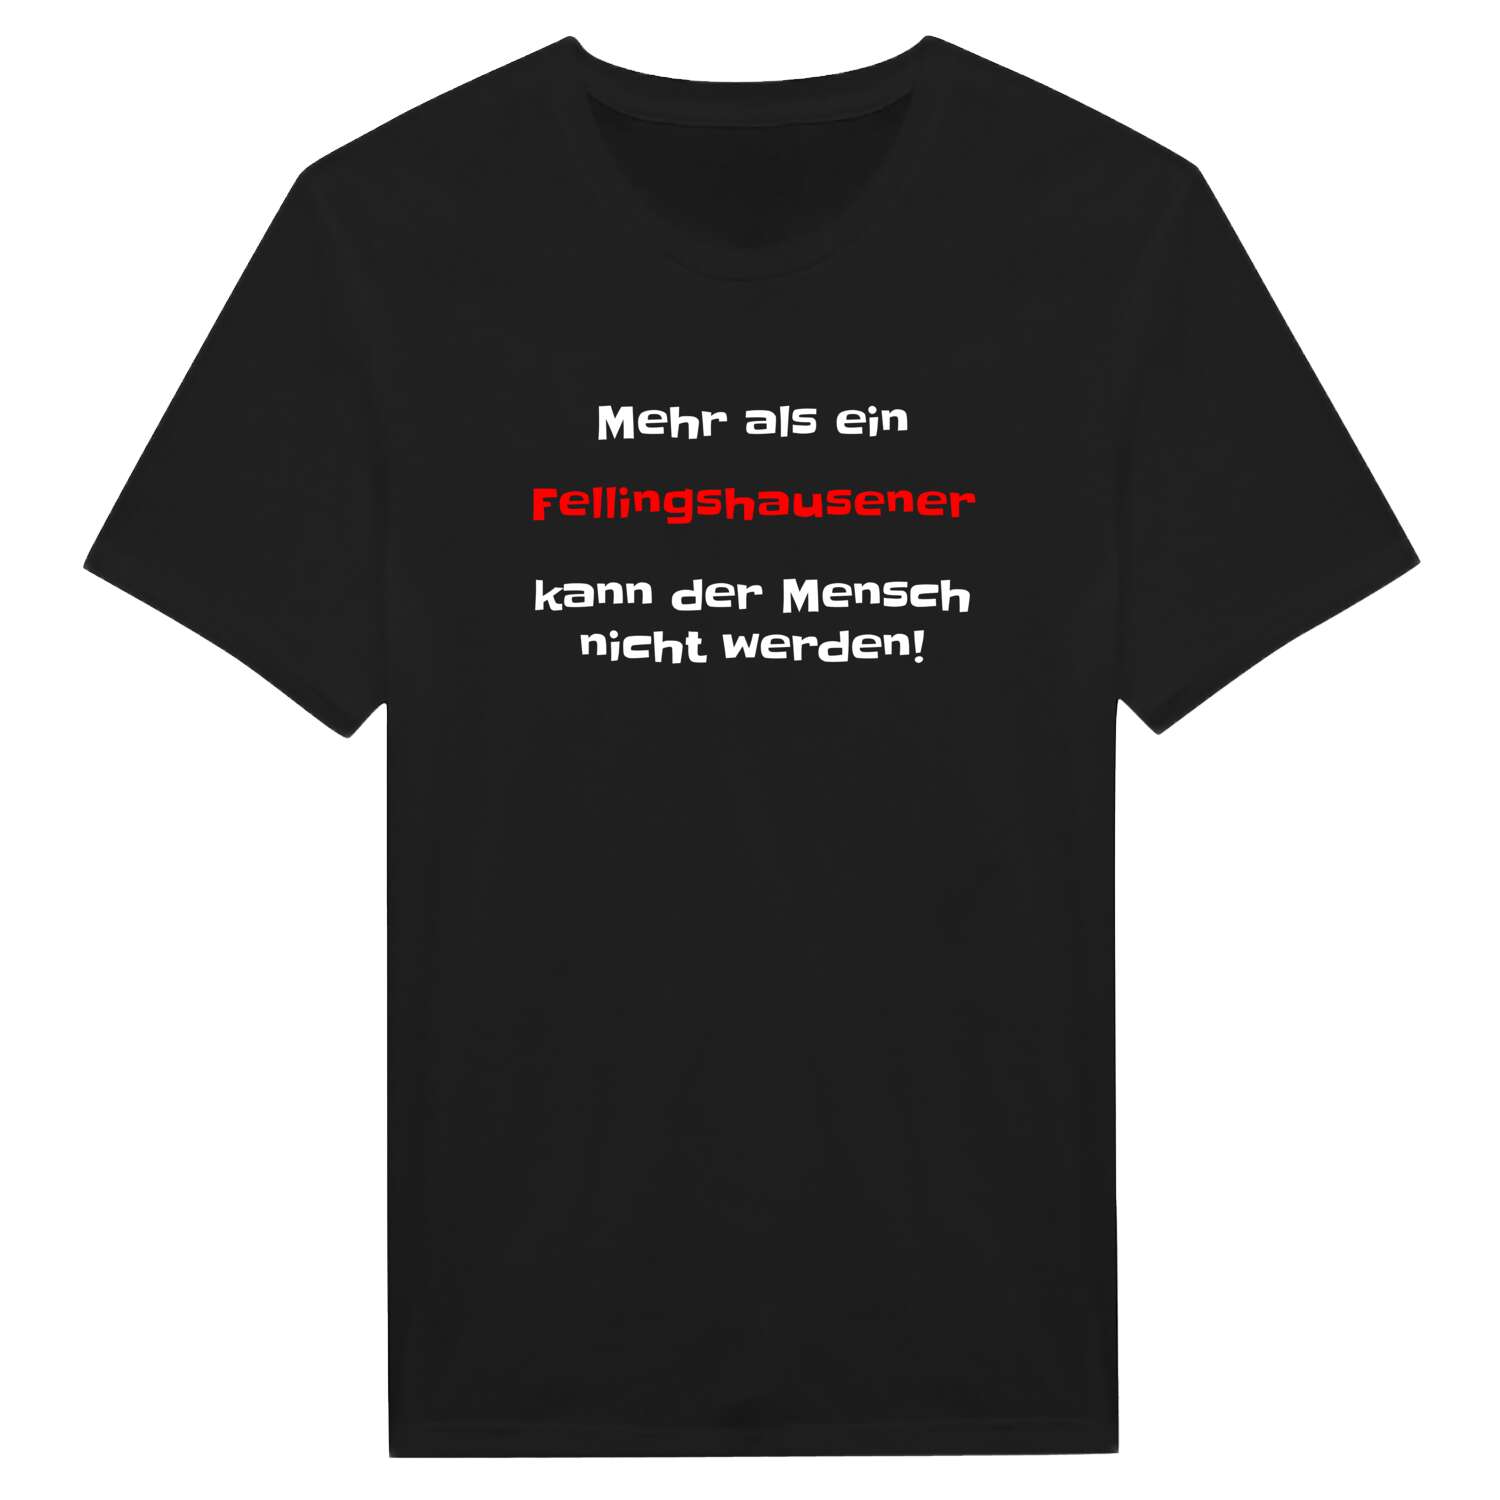 Fellingshausen T-Shirt »Mehr als ein«